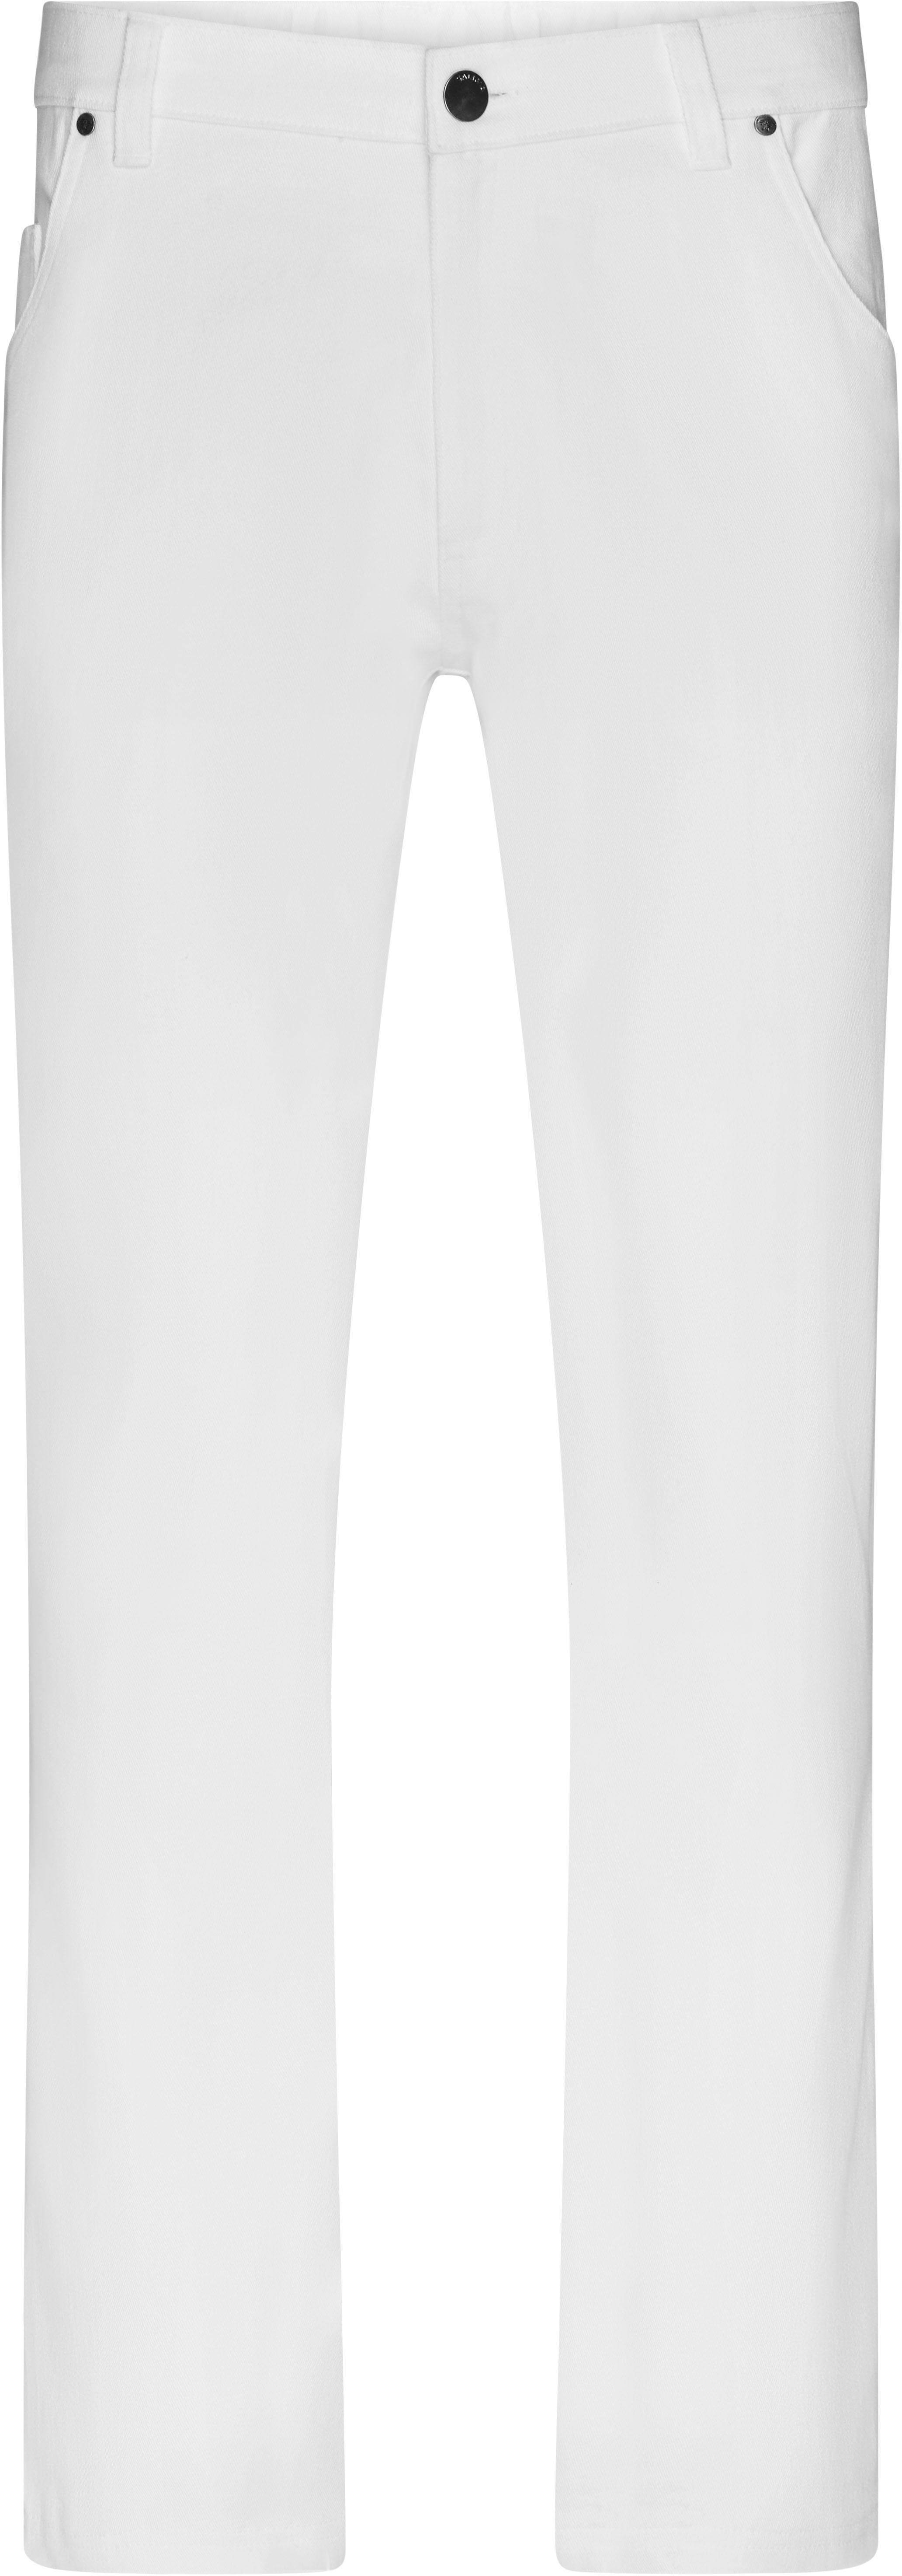 Pánské elastické kalhoty JN 3002 Barva: bílá, Velikost: 54